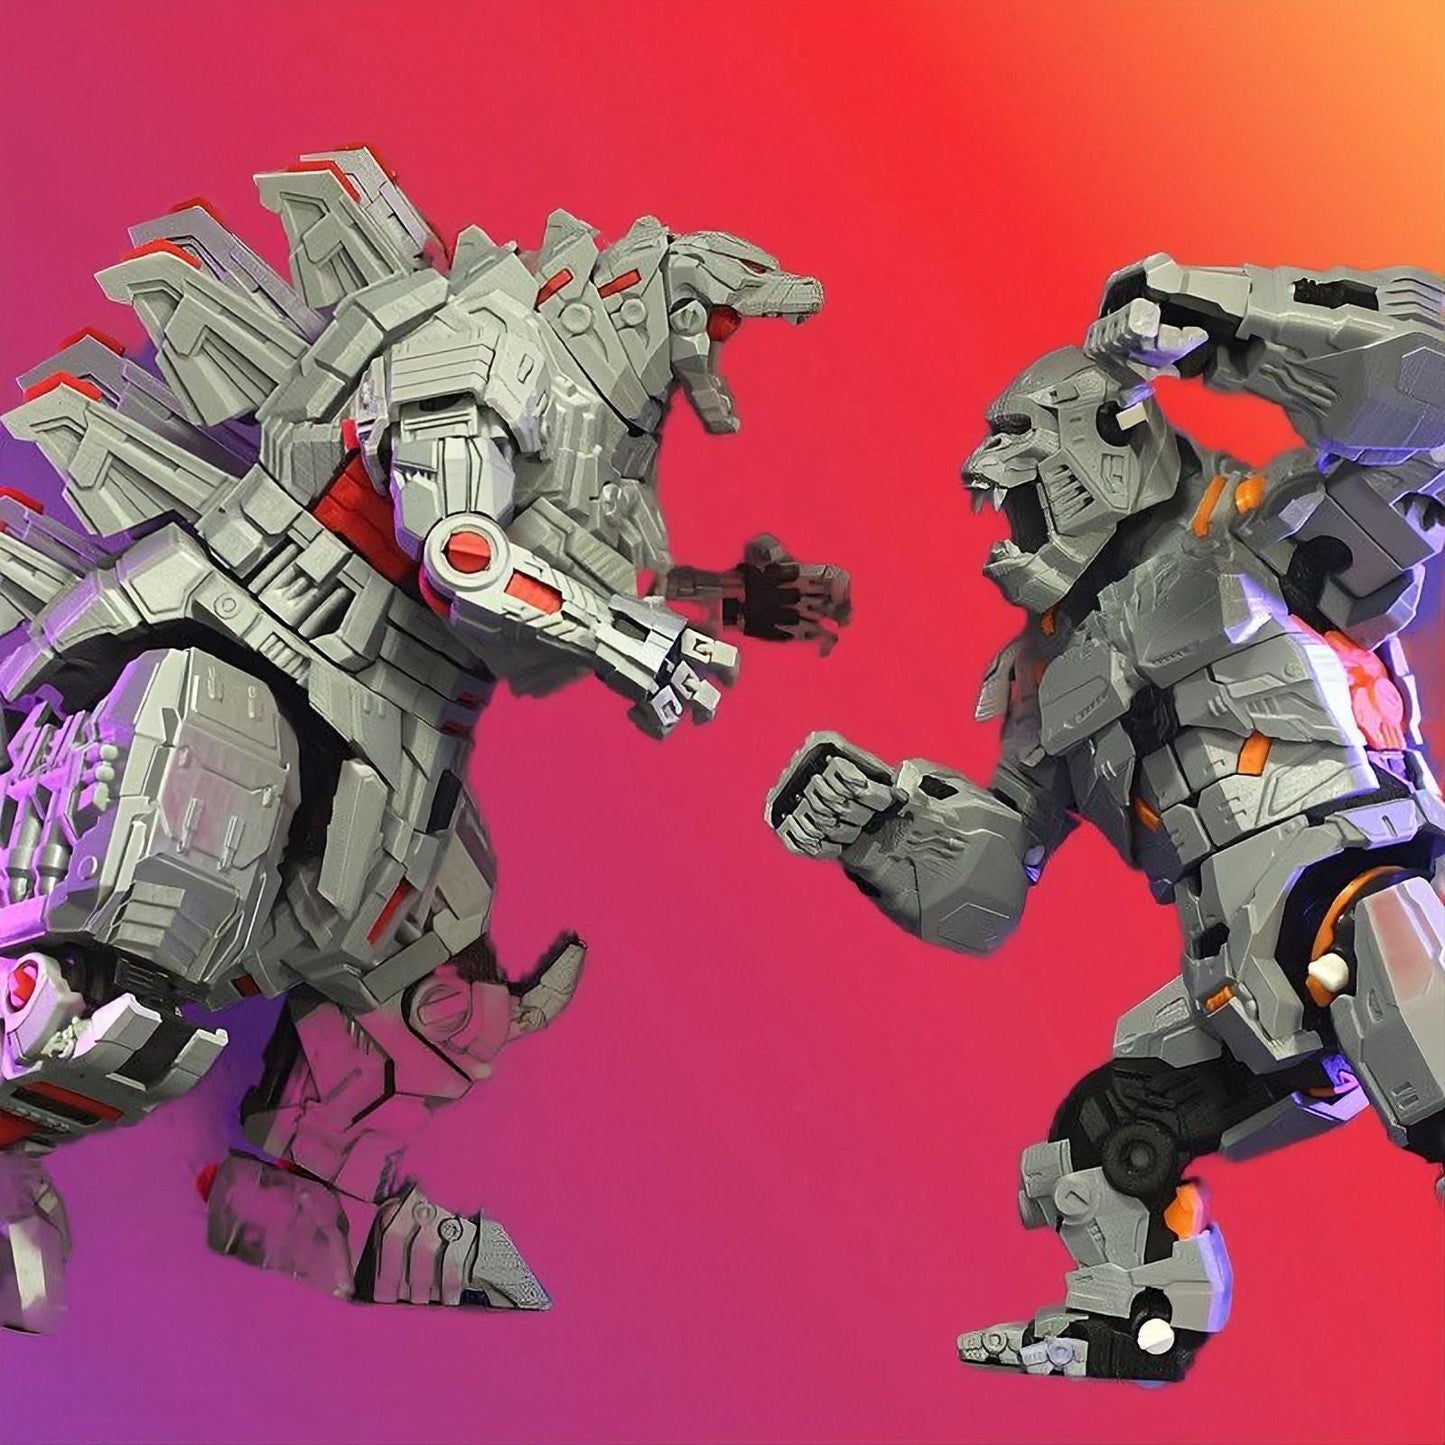 Atomic Dragon - Mecha Godzilla - STL 3D Print Files